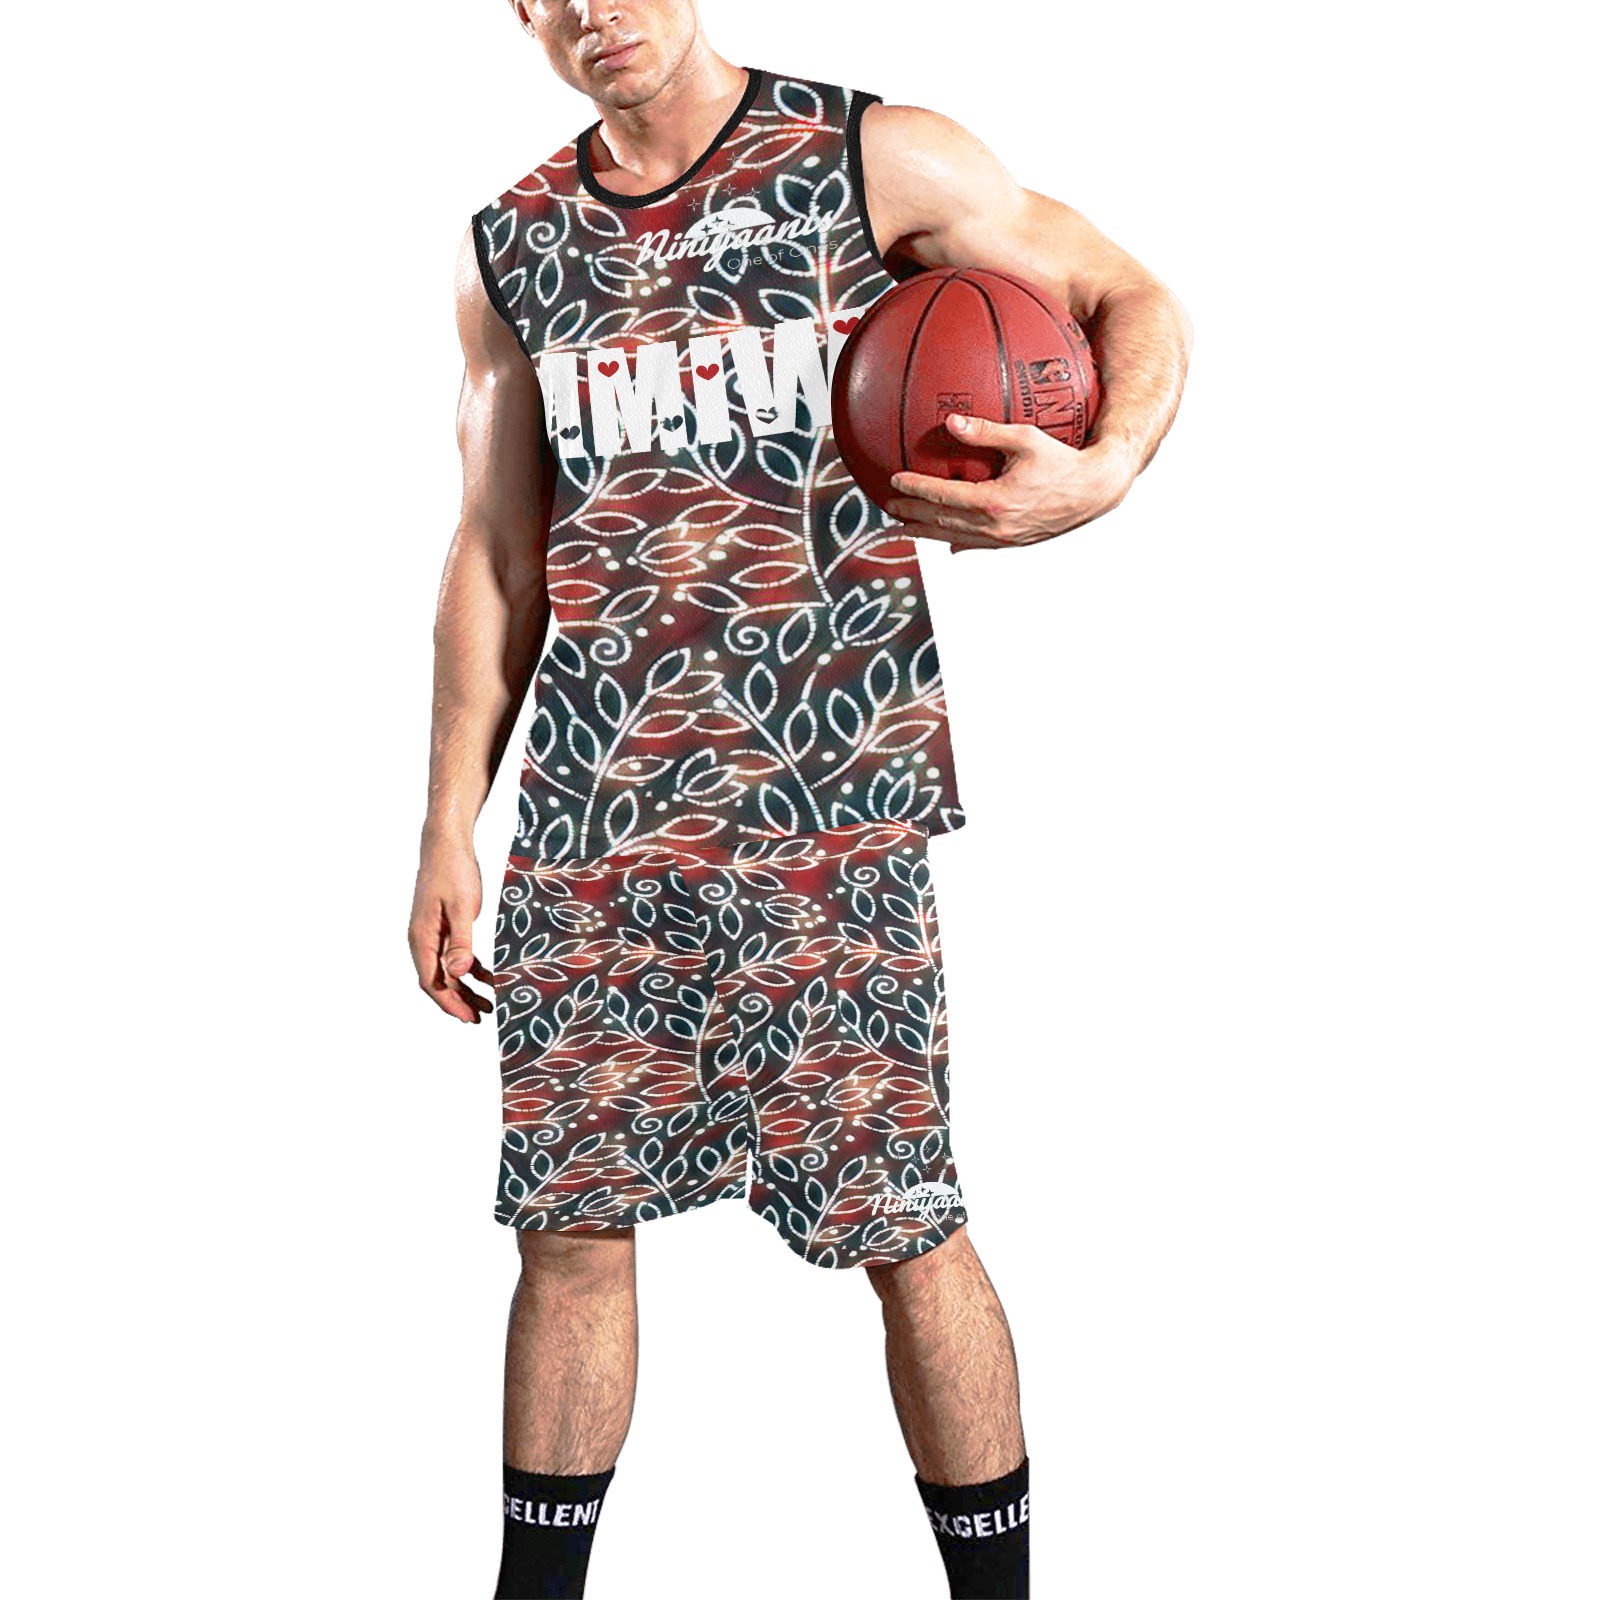 MMIW 6 All Over Print Basketball Uniform